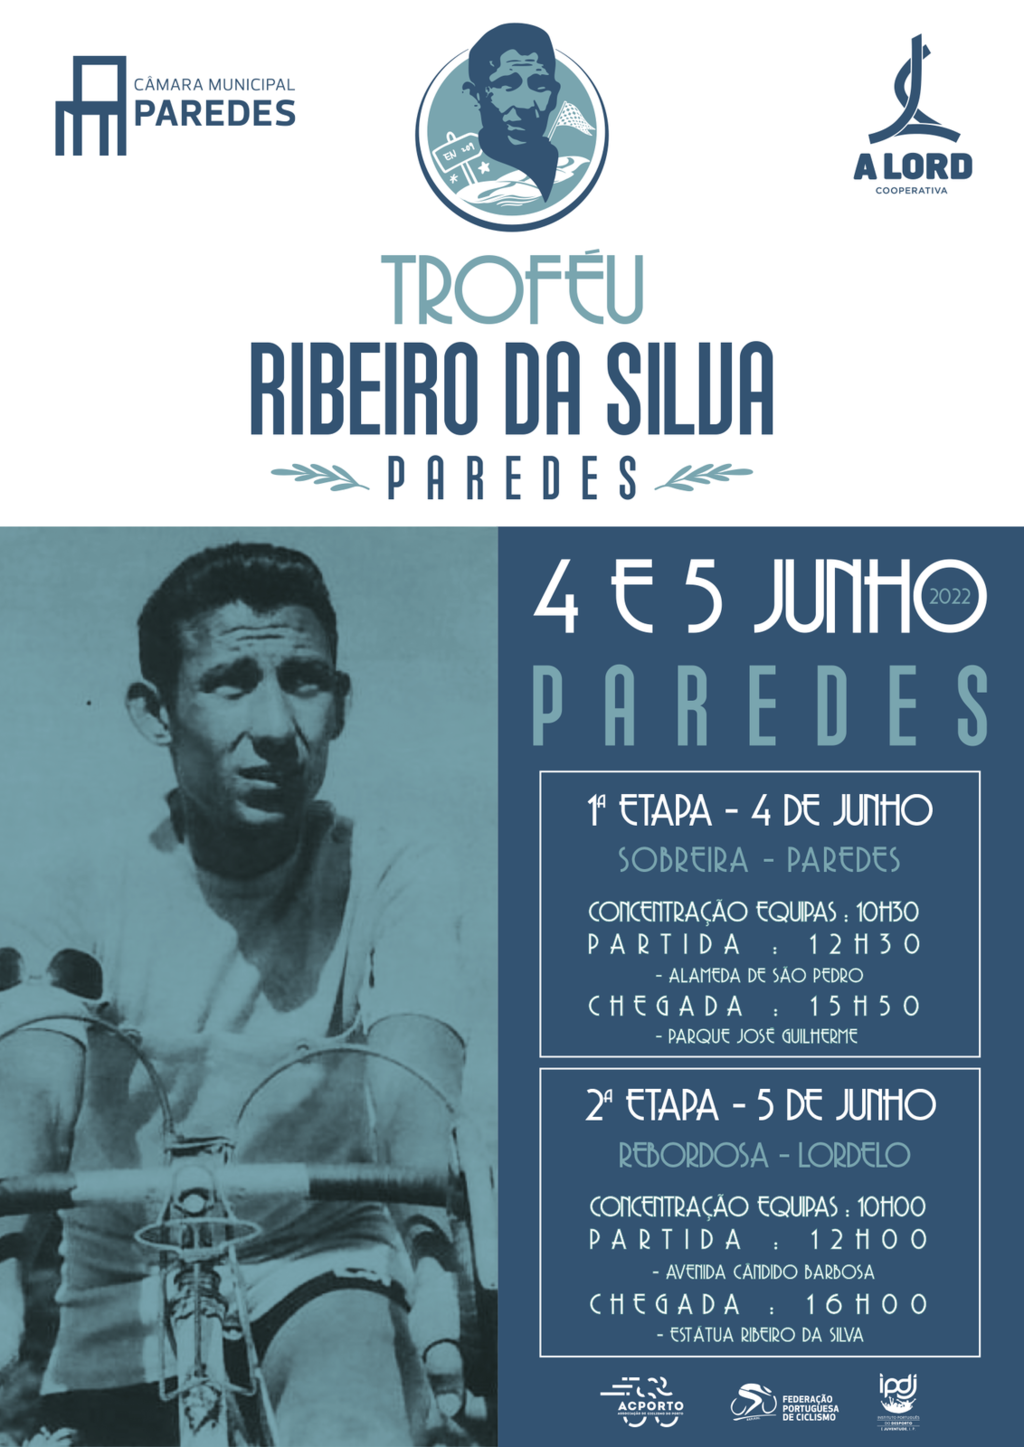 Troféu Ribeiro da Silva